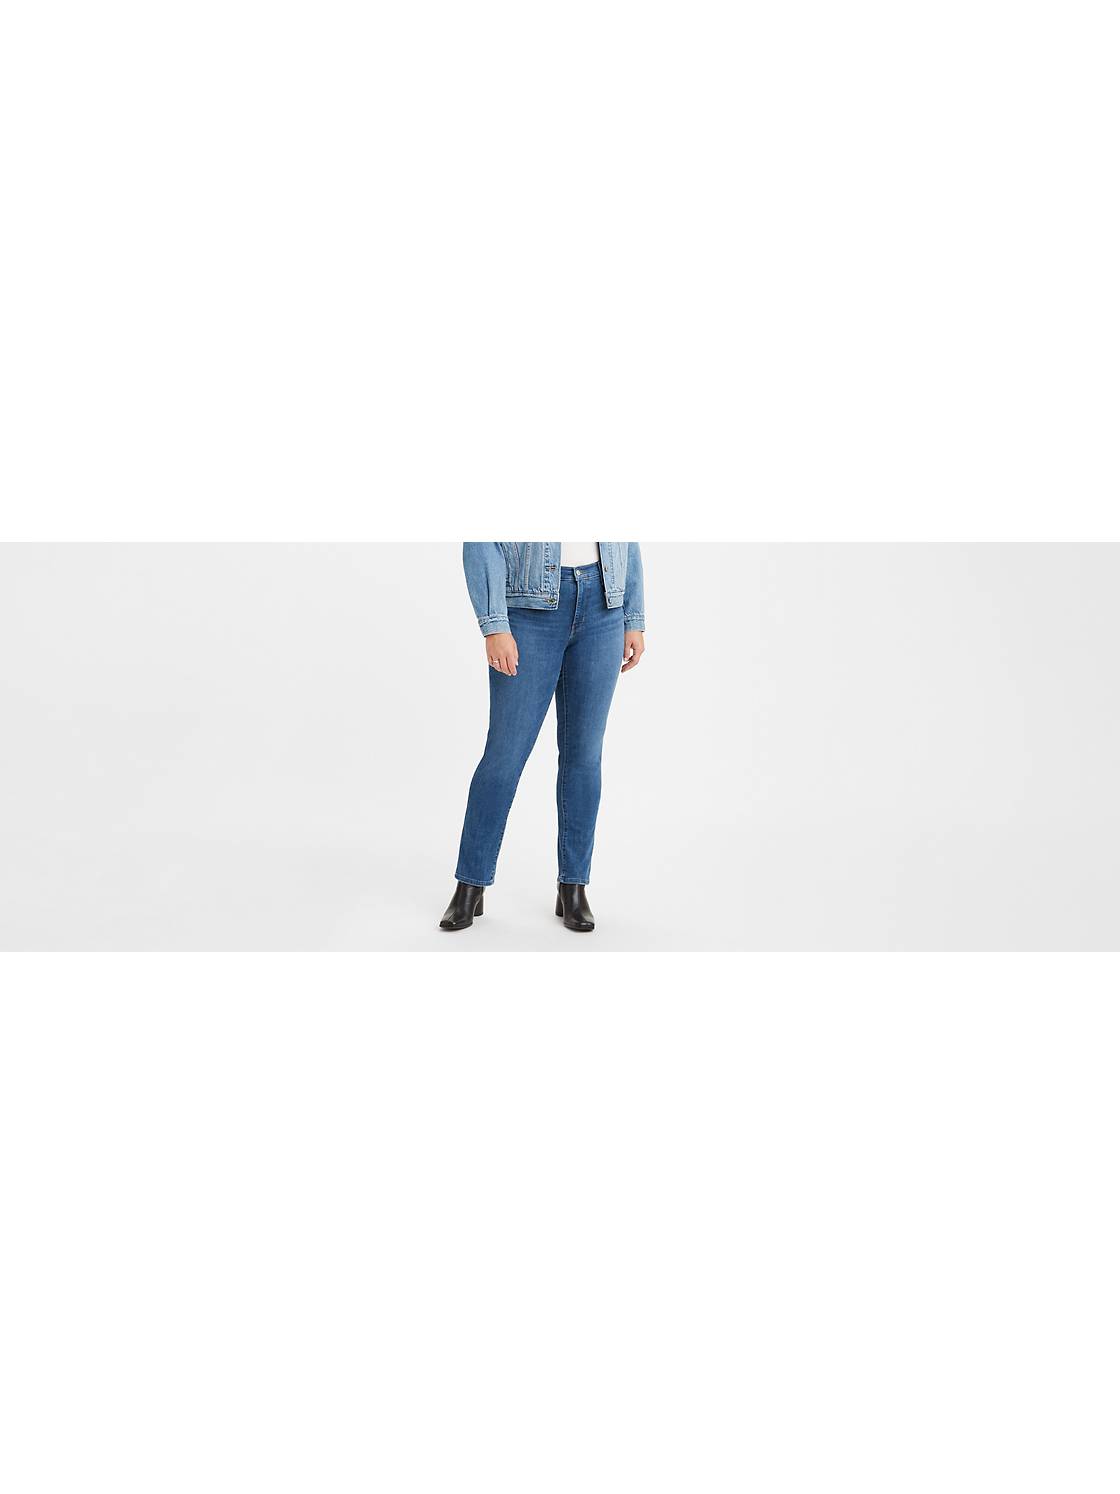 MILADYS, Jeans, Miladys Wonderfit Red Slim Leg Womans Slimming Jeans  Cropped Sz 23692cm Nwt